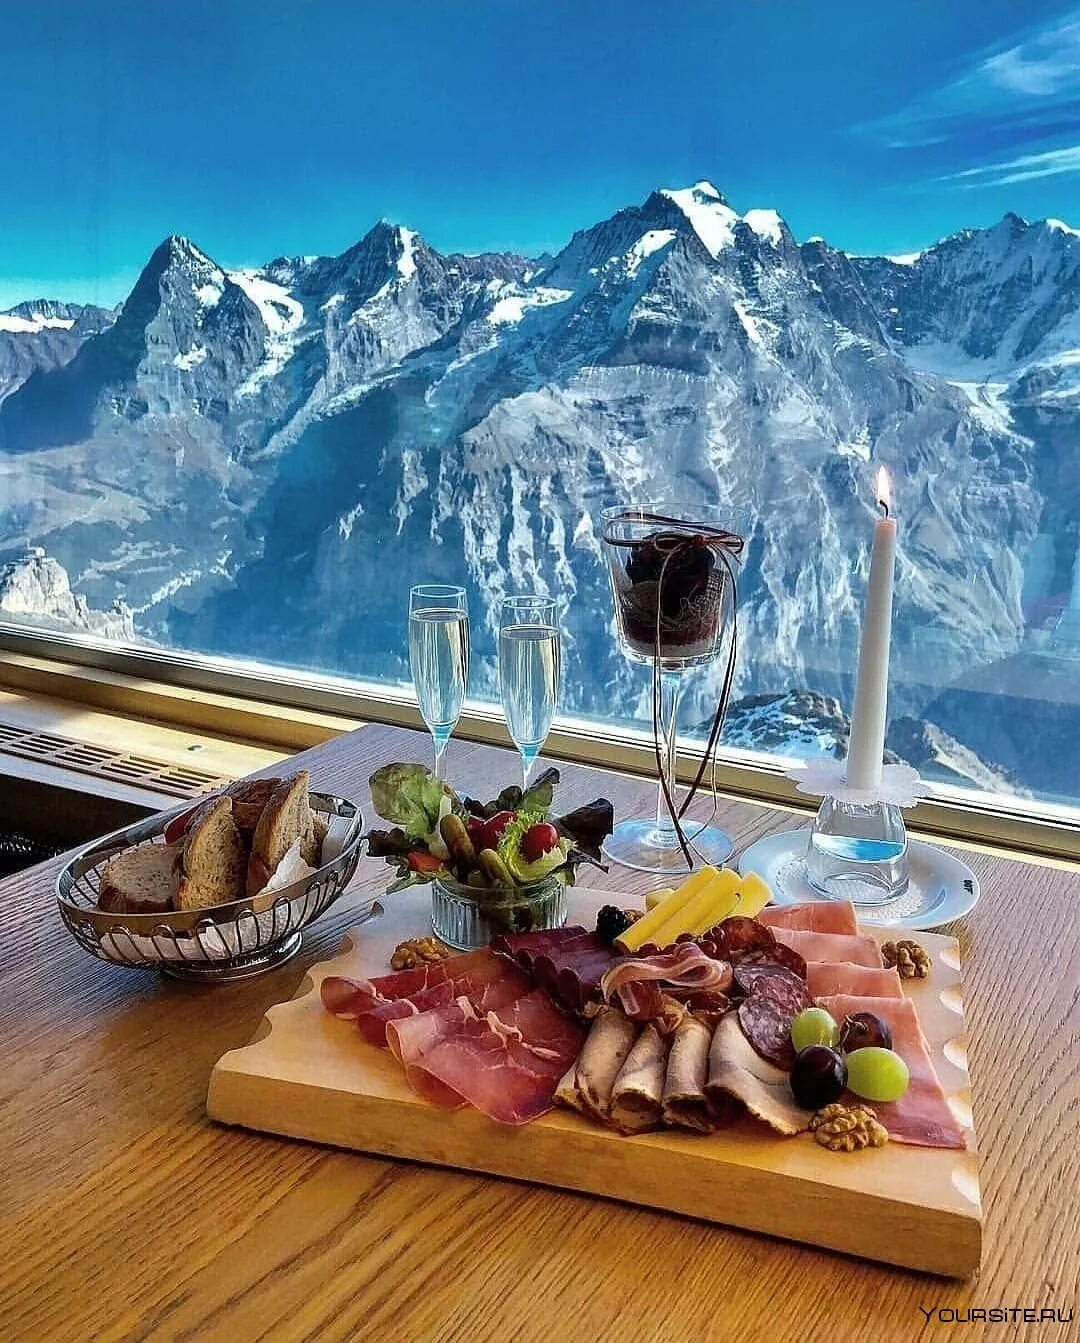 Красивый завтрак. Завтрак в Альпах. Обед с видом на горы. Ужин с видом на горы. Завтраки красная поляна